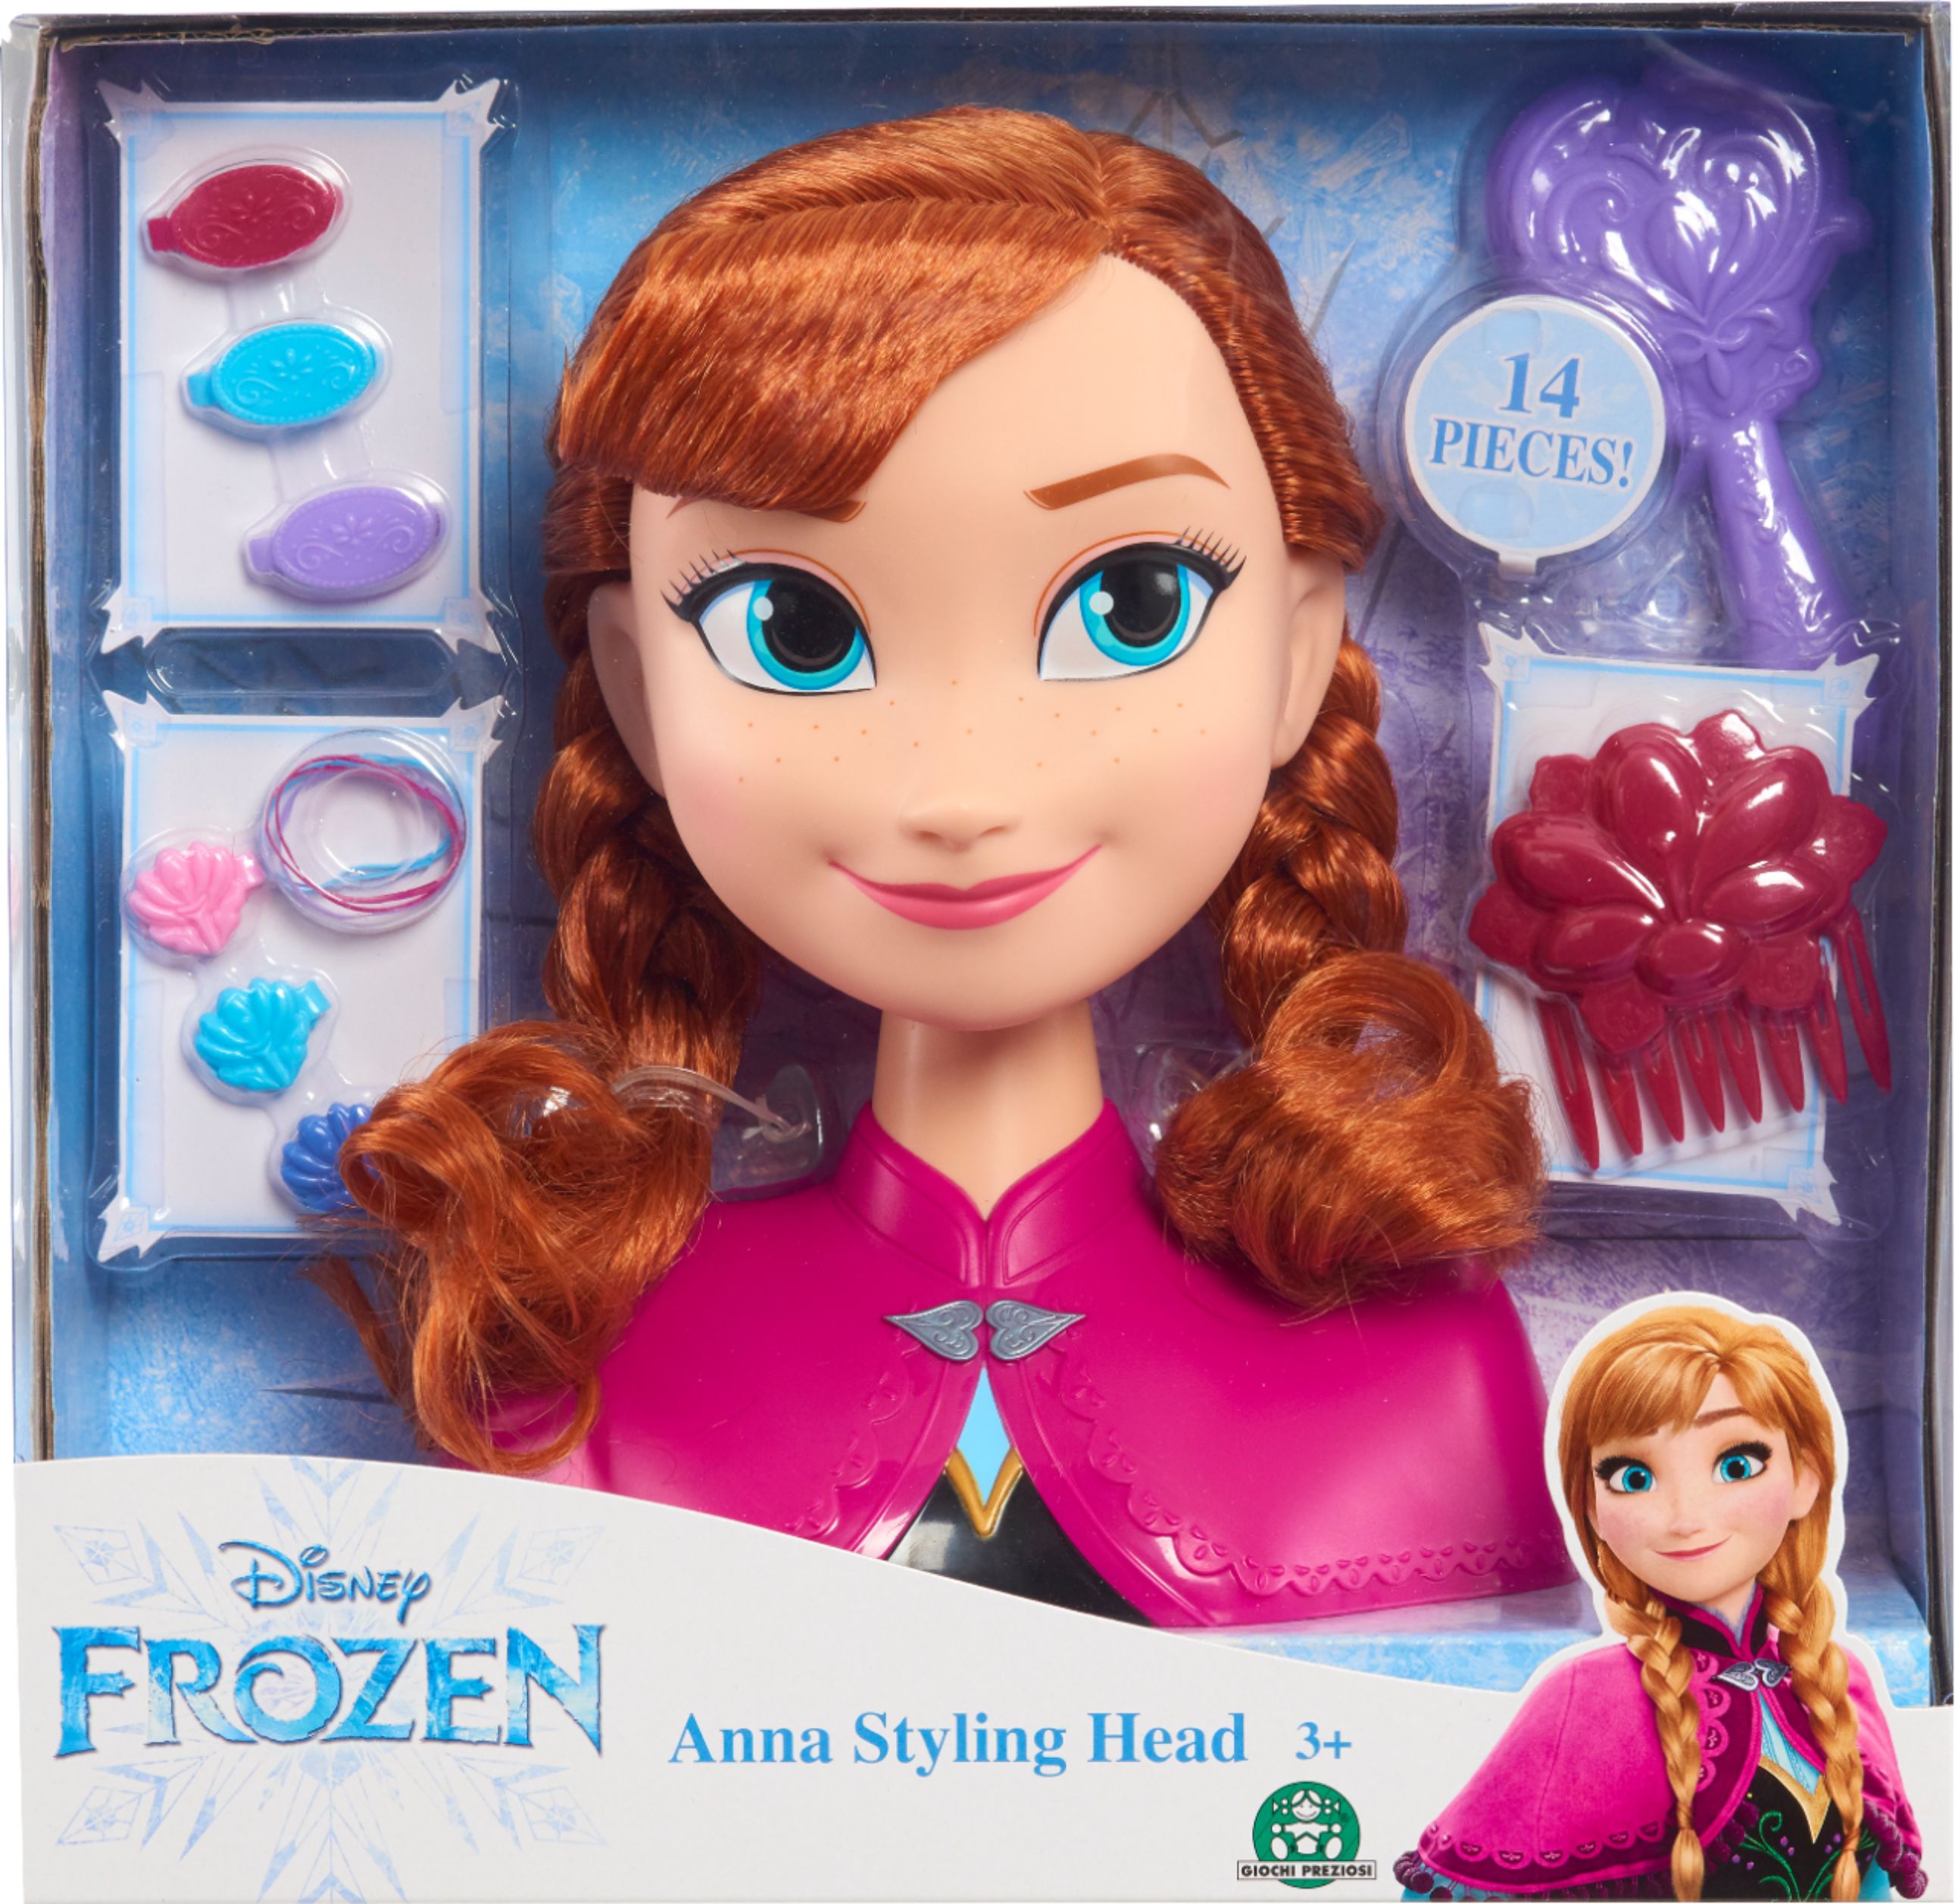 Disney Frozen Anna Styling Head 32030 - Best Buy